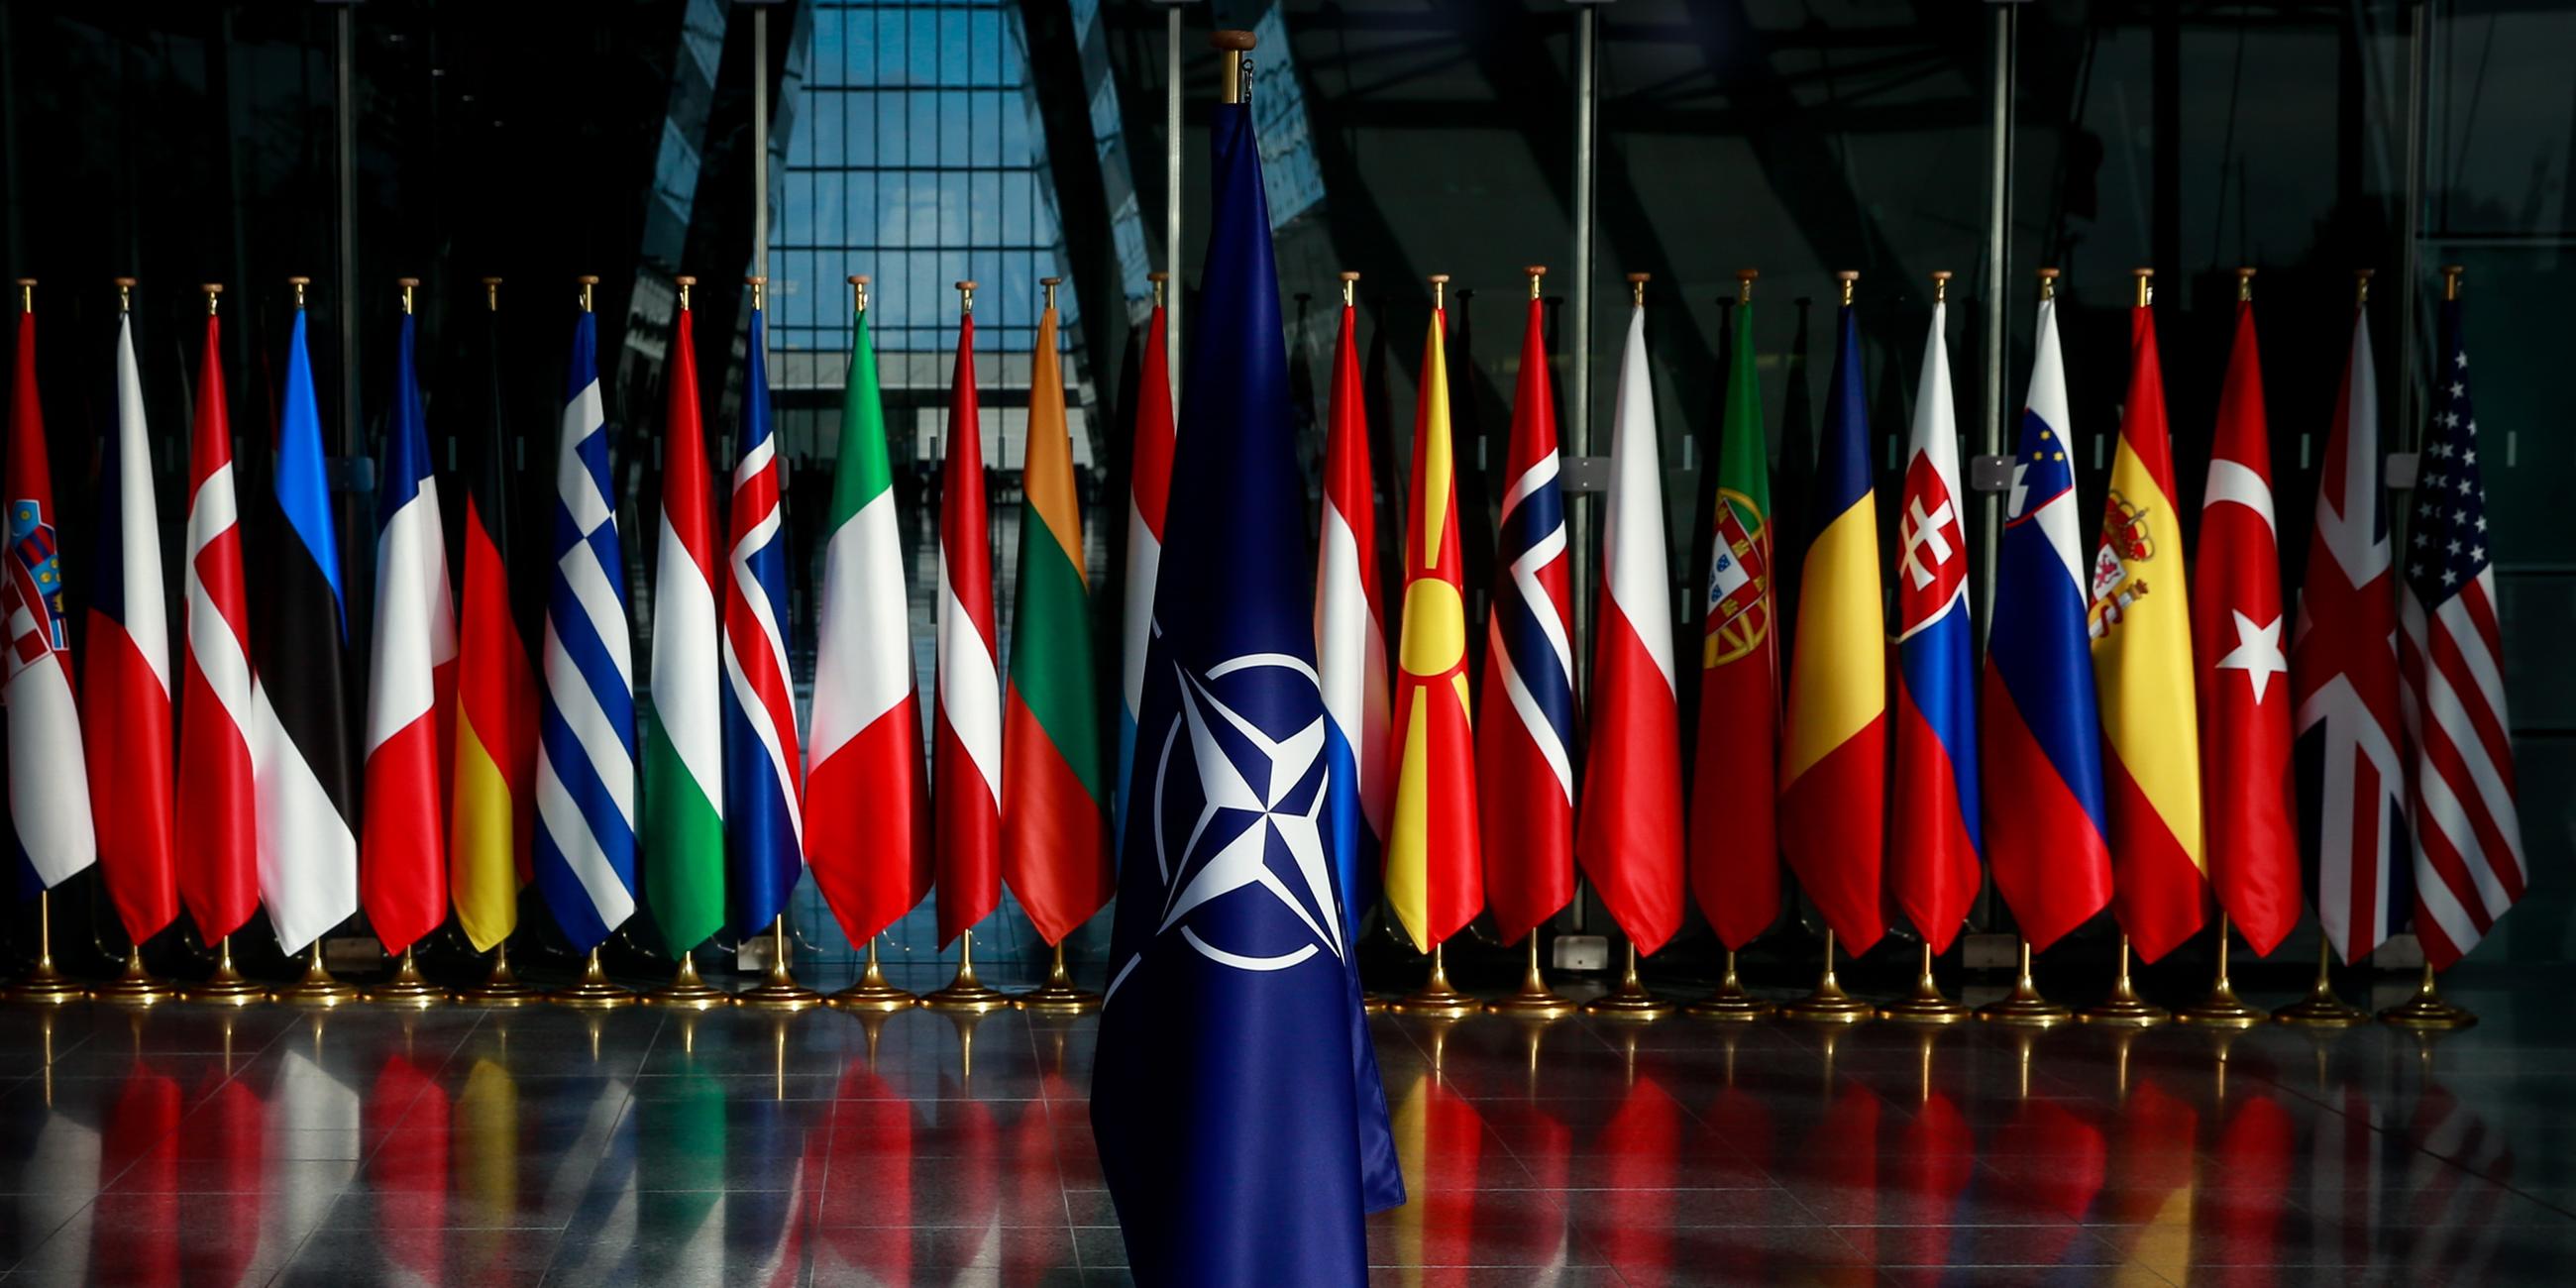 NATO-Flagge, die vor den Flaggen der Mitgliedsstaaten des Bündnisses platziert ist.